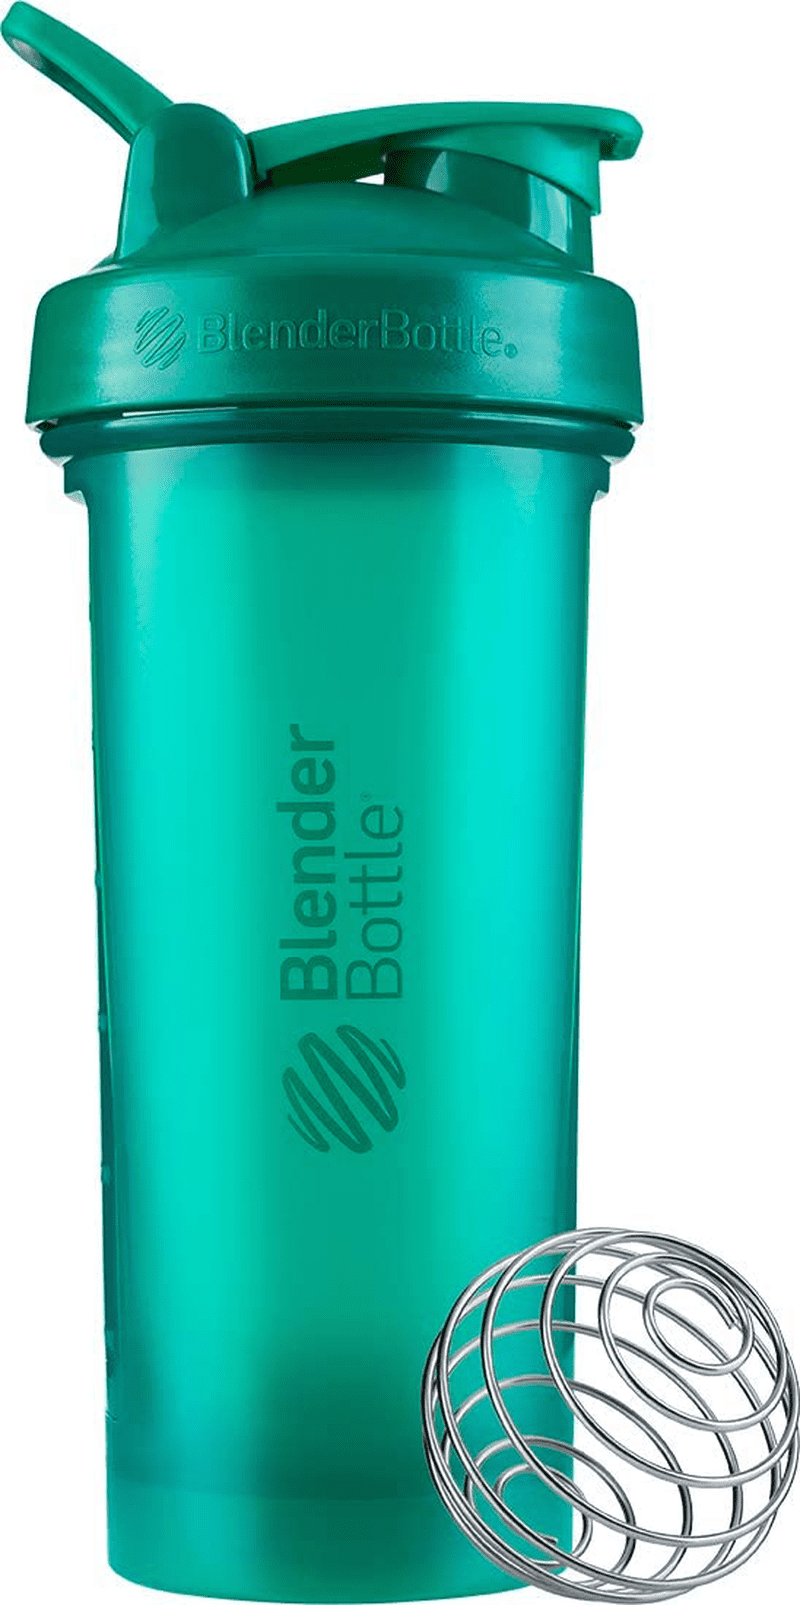 H-E-B Healthy Living BlenderBottle Shaker Bottle